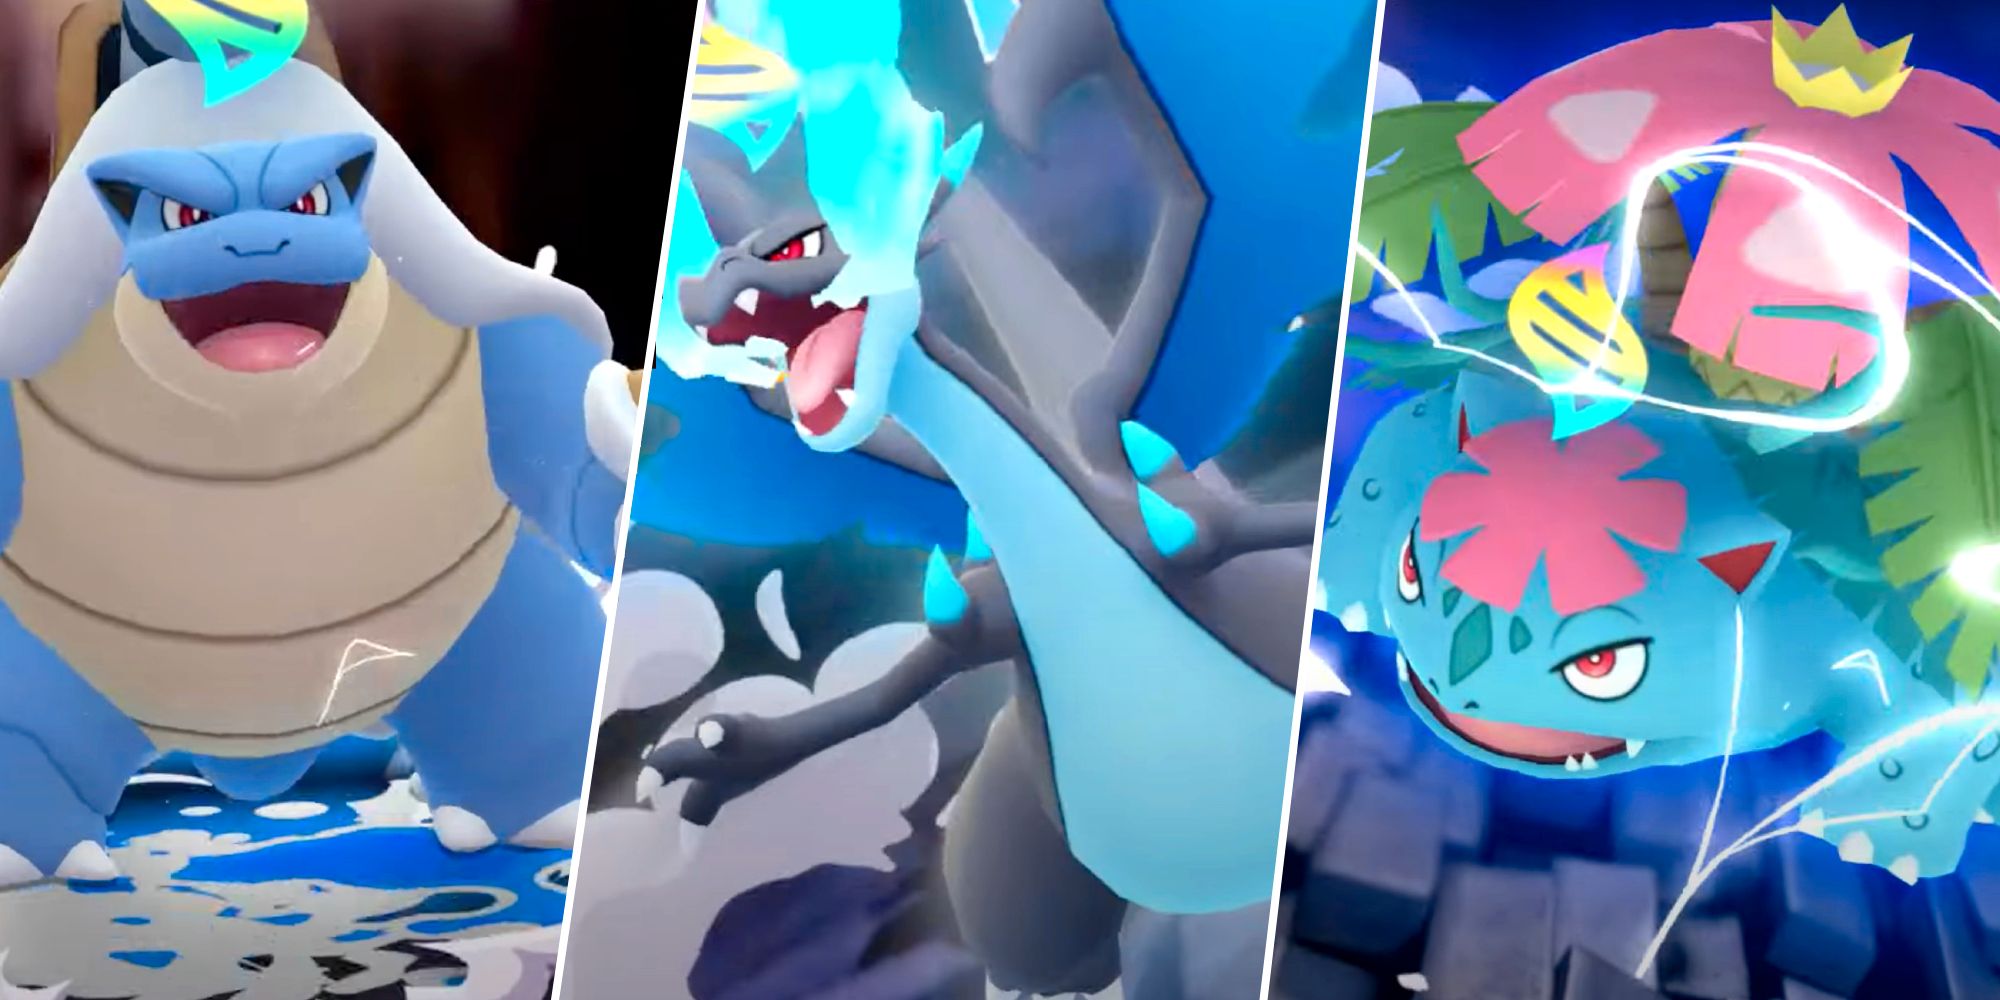 Comemorem o lançamento global da atualização na Megaevolução com Mega  Kangaskhan e um evento de megamomento! – Pokémon GO